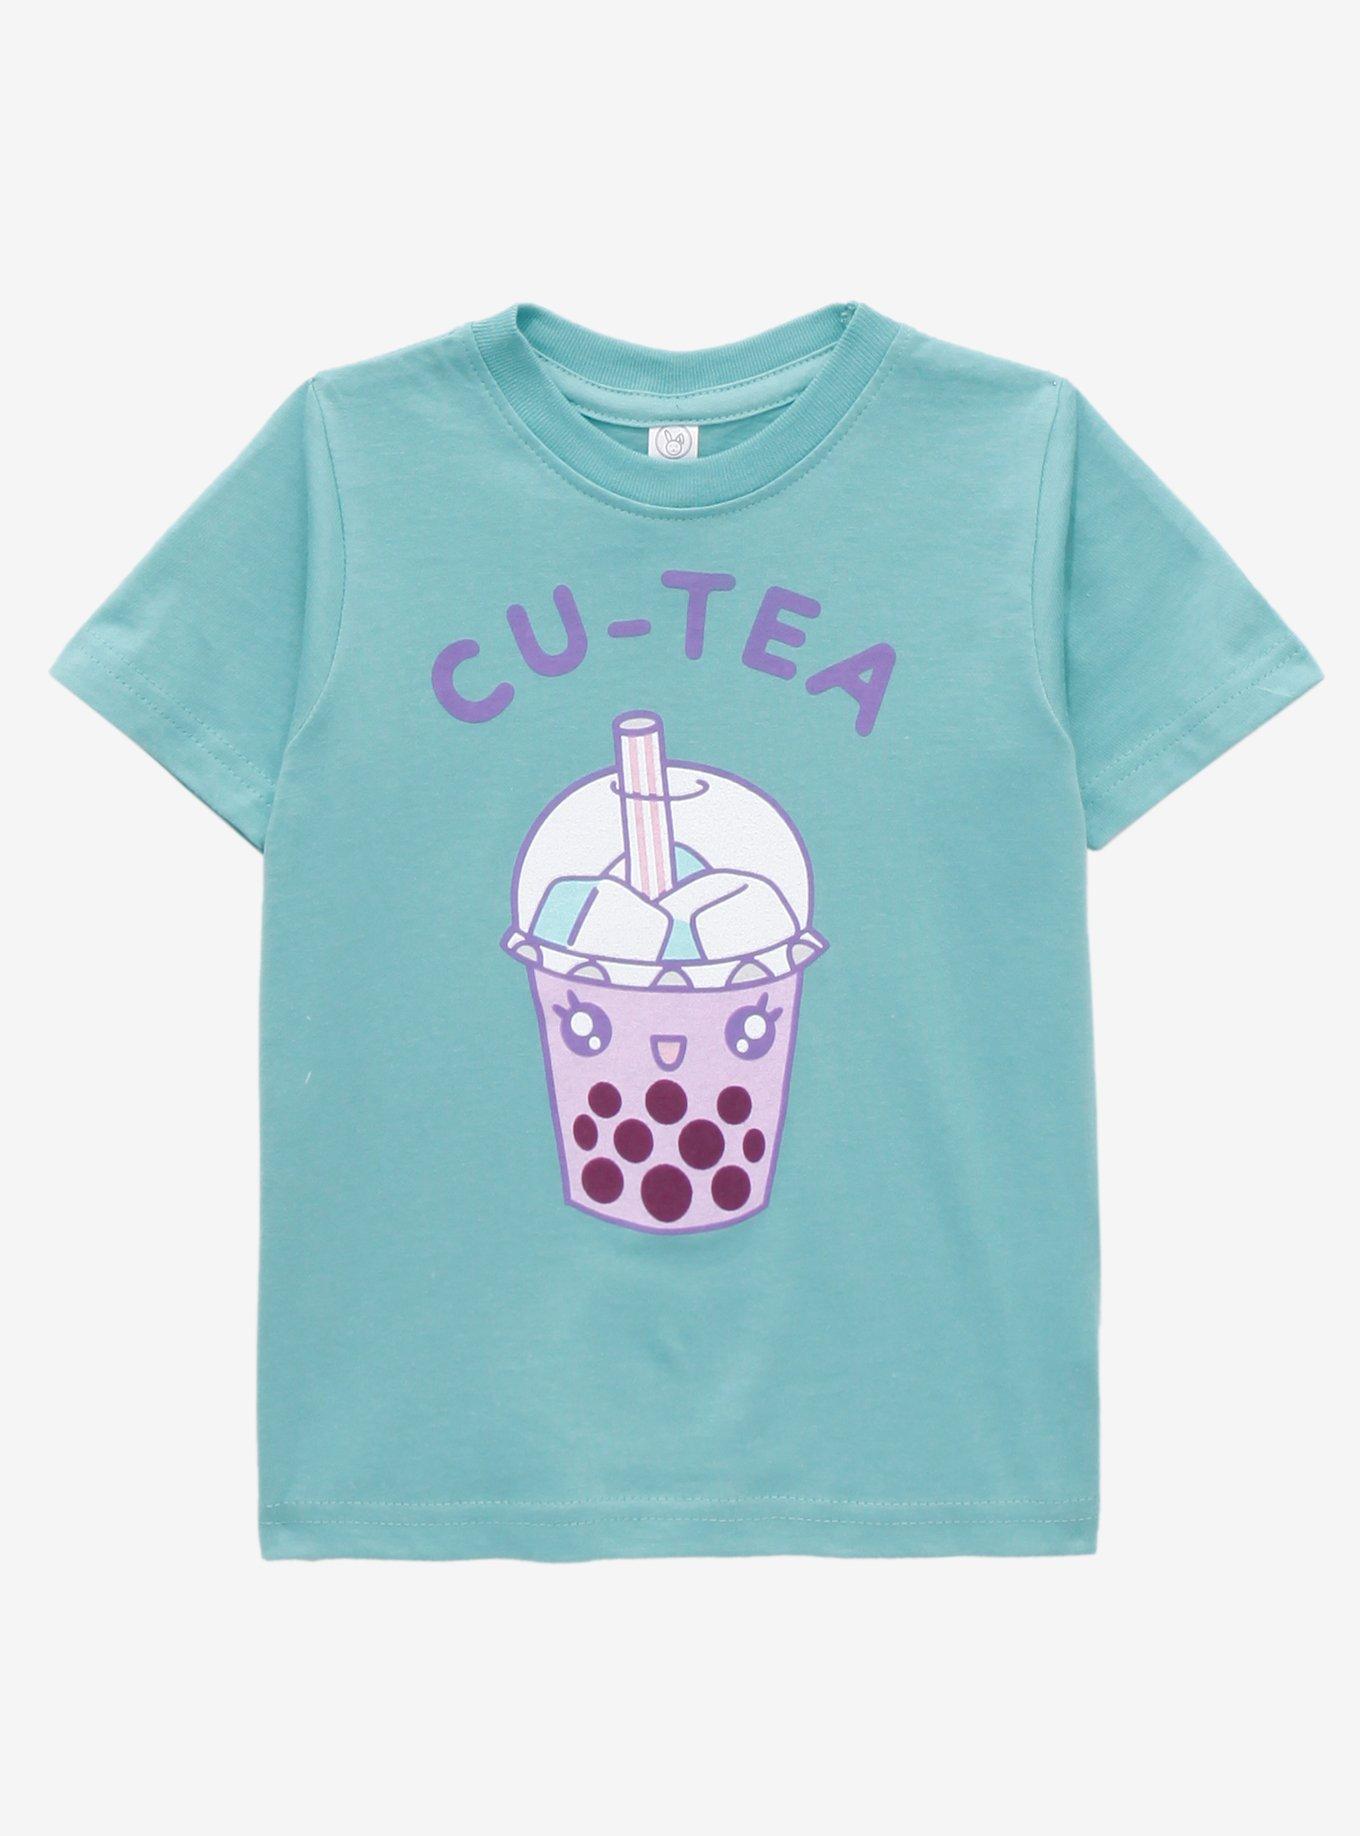 Cu-Tea Chibi Boba Toddler T-Shirt - BoxLunch Exclusive, SAGE, hi-res